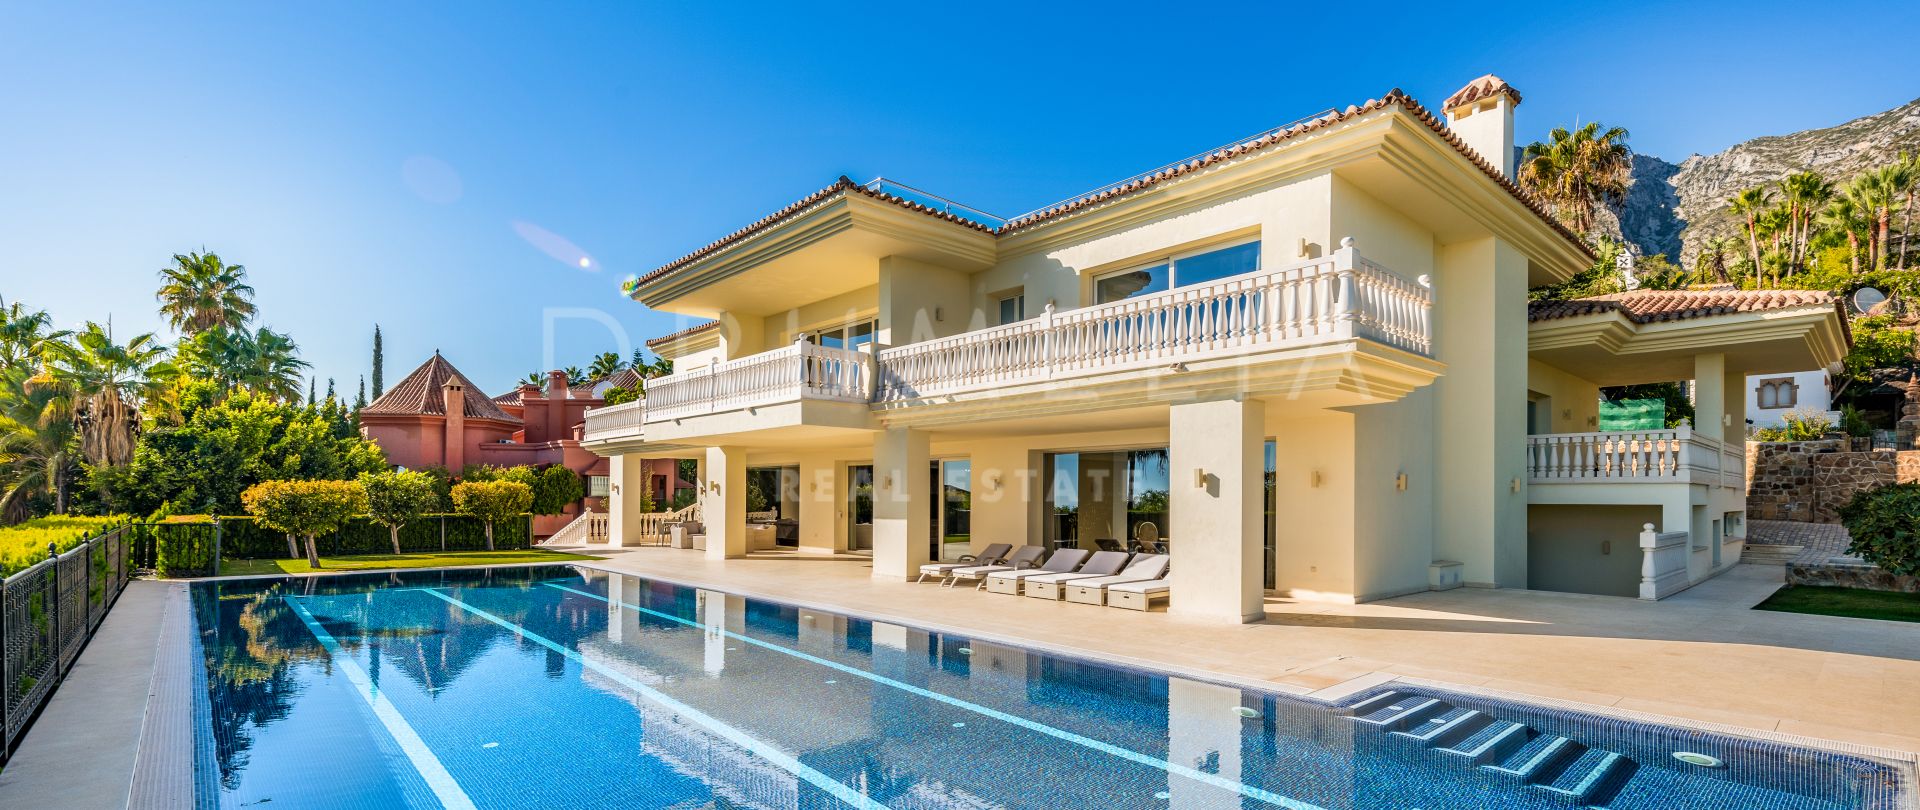 Impresionante mansión mediterránea de lujo, Sierra Blanca, Marbella Golden Mile (Marbella)